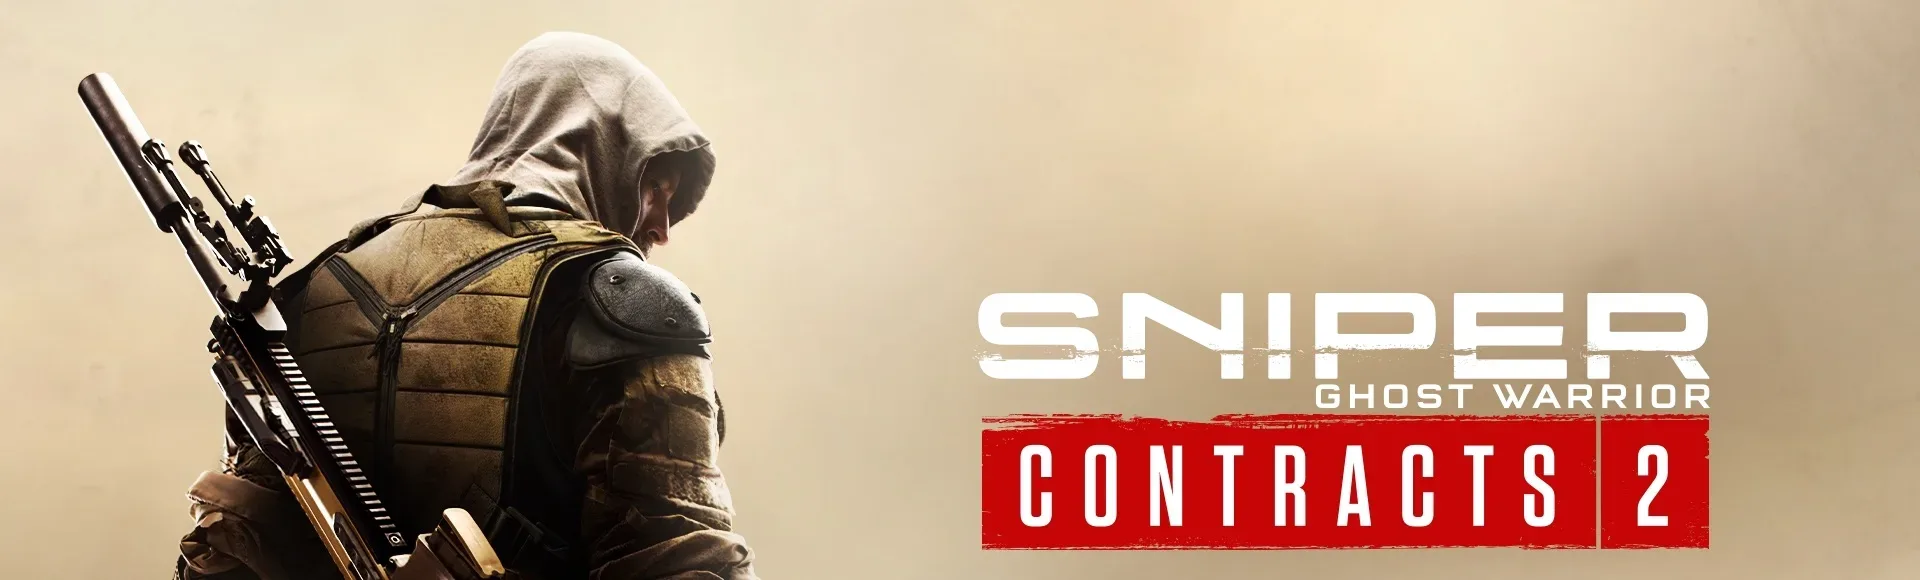 الإعلان عن لعبة Sniper Ghost Warrior Contracts 2